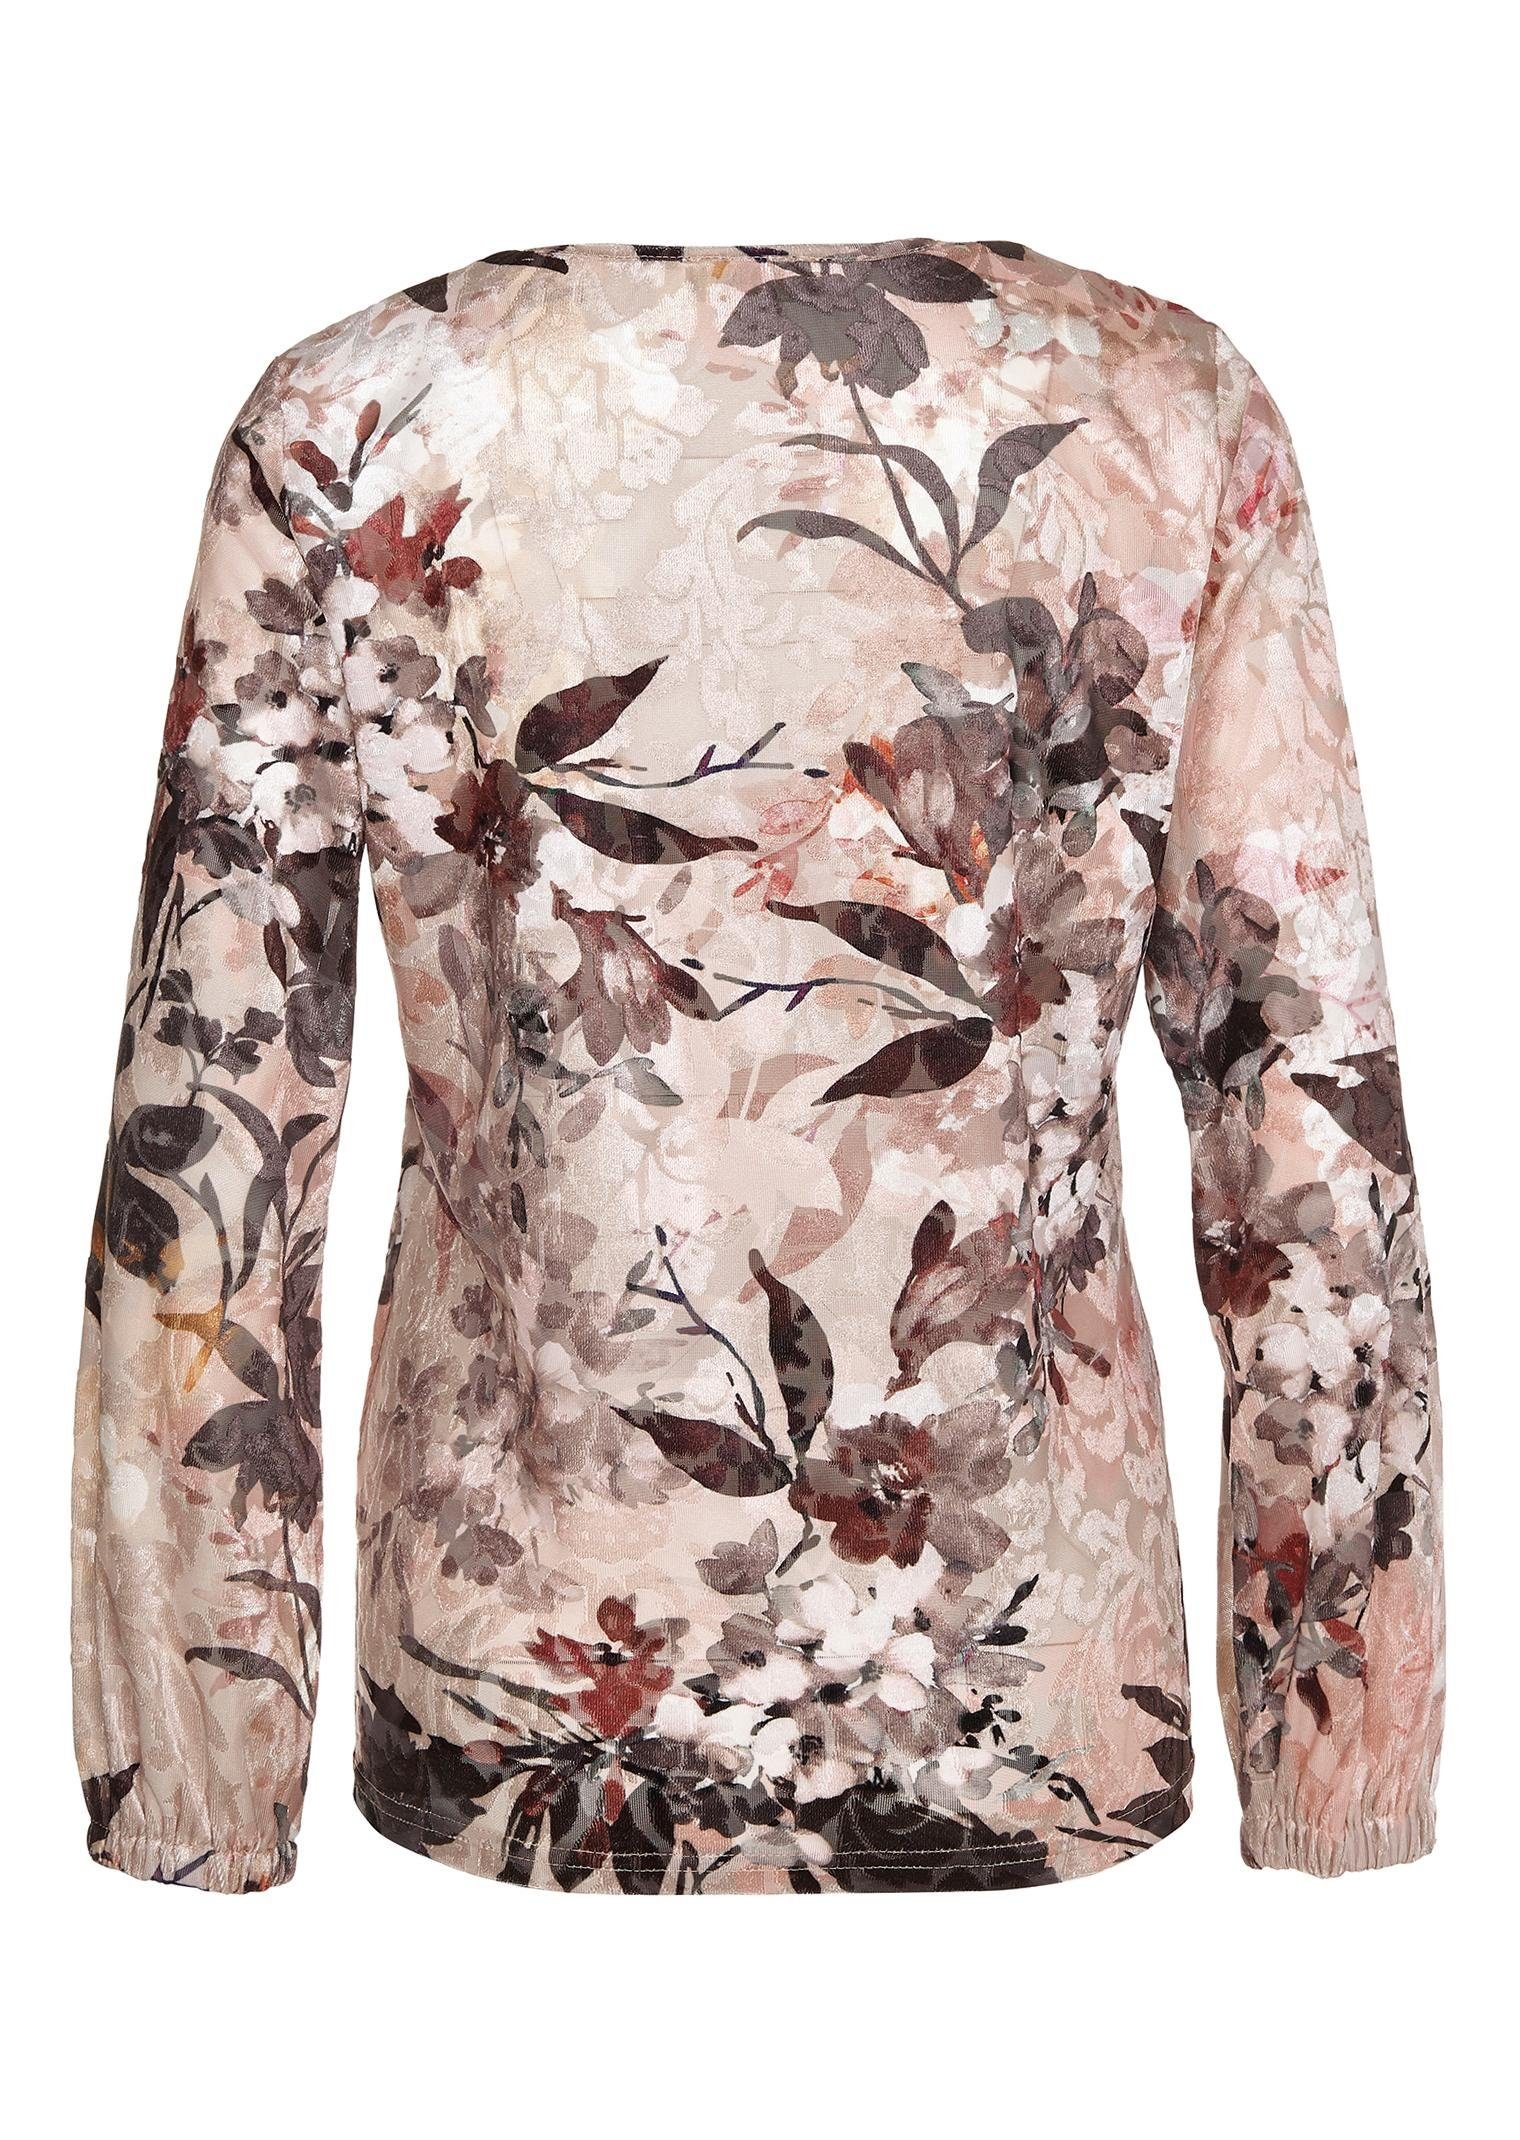 floralem Print-Shirt Druck Samtshirt mit GOLDNER Glänzendes